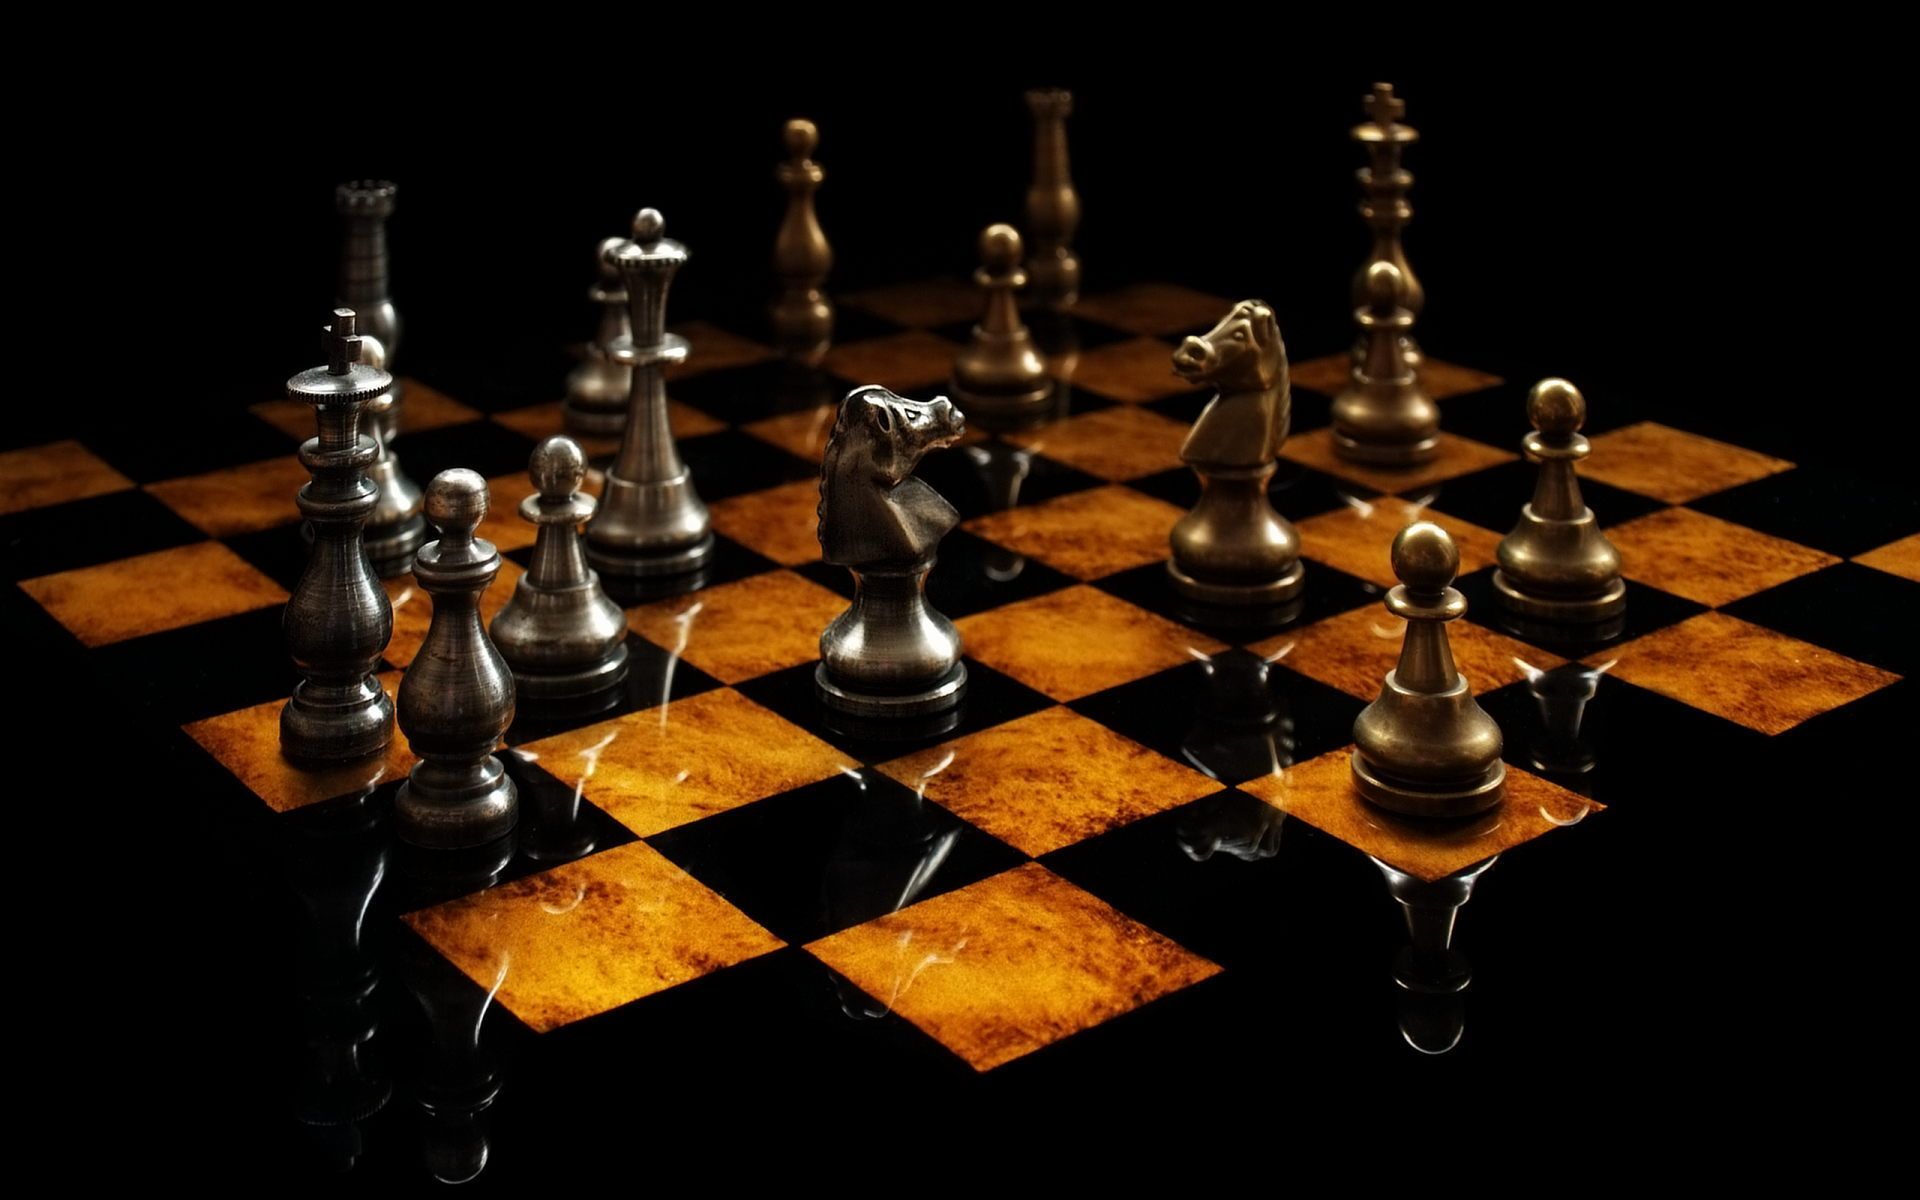 fond d'écran d'échecs 3d,jeux et sports d'intérieur,jeu de plateau,échiquier,jeux,échecs